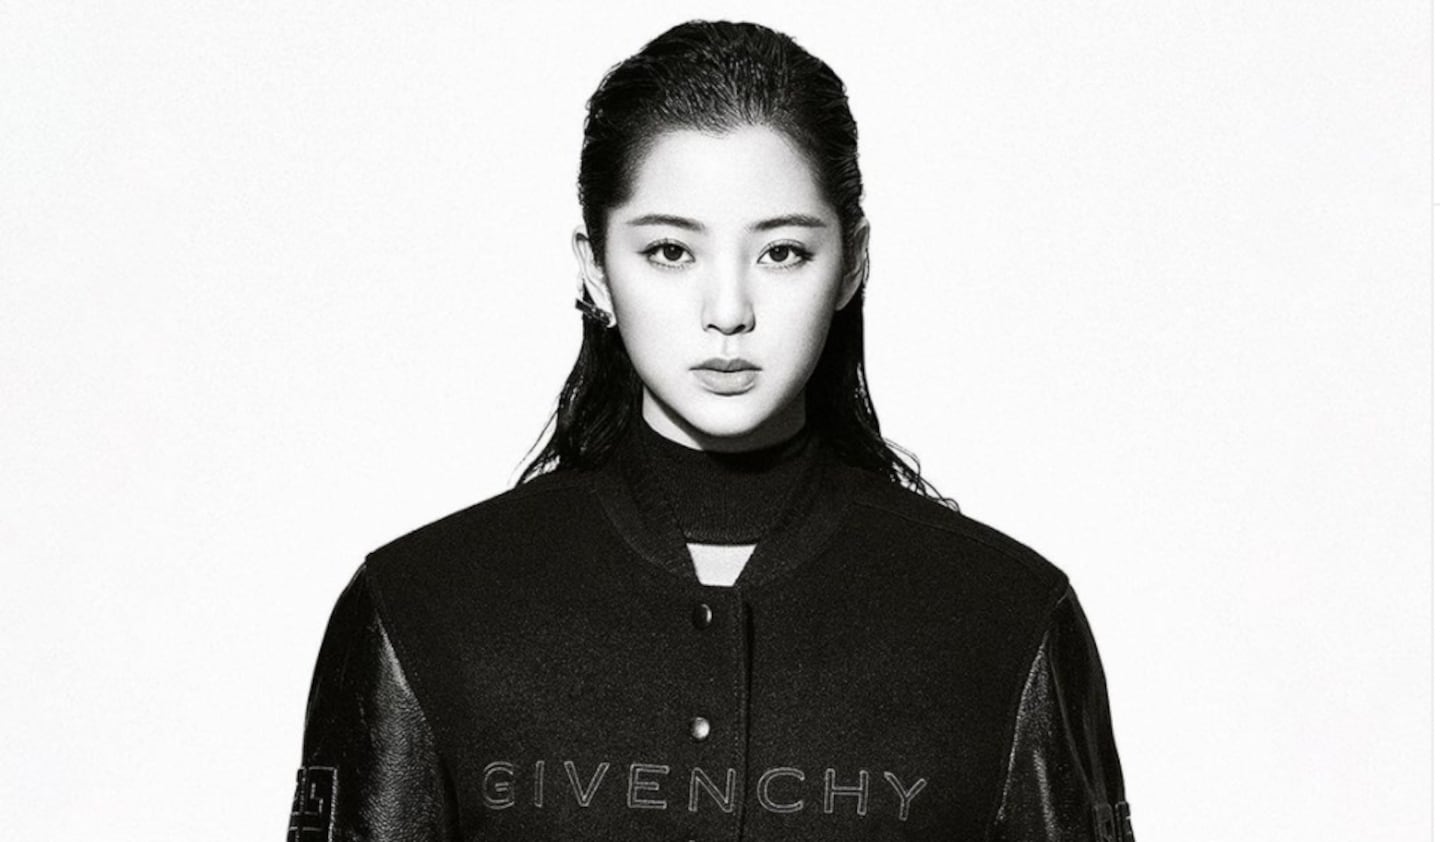 Givenchy has named Ouyang Nana its new brand ambassador. Givenchy